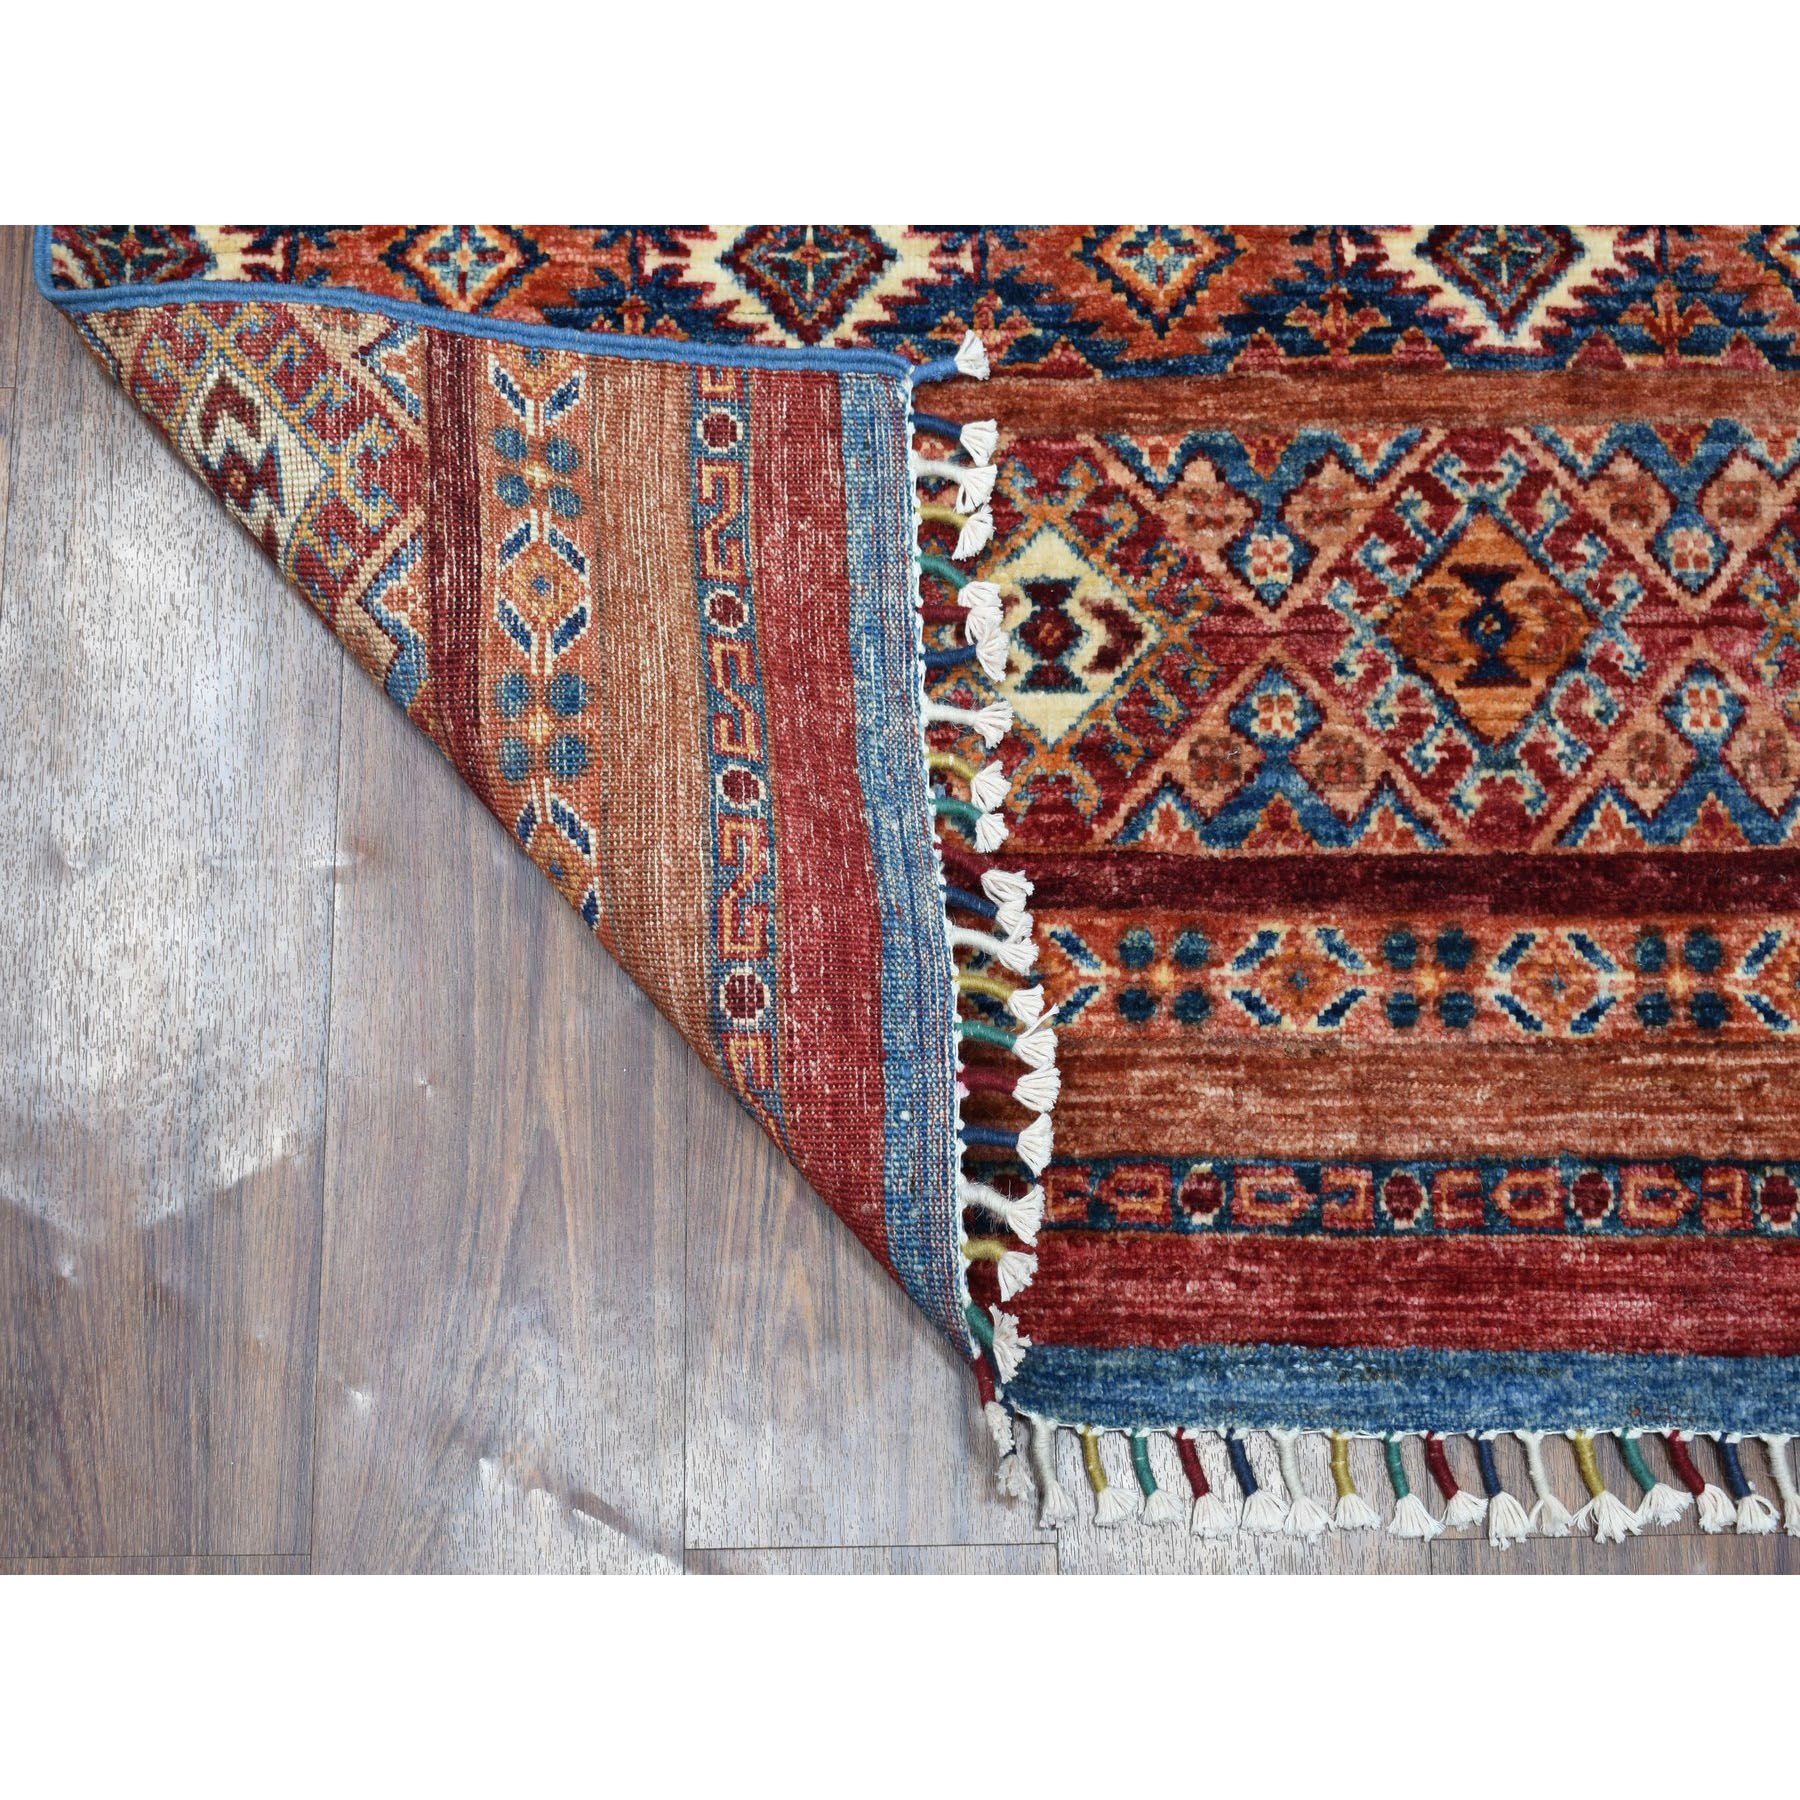 2'8"x8' Khorjin Design Runner Blue Super Kazak Geometric Pure Wool Hand Woven Oriental Rug 